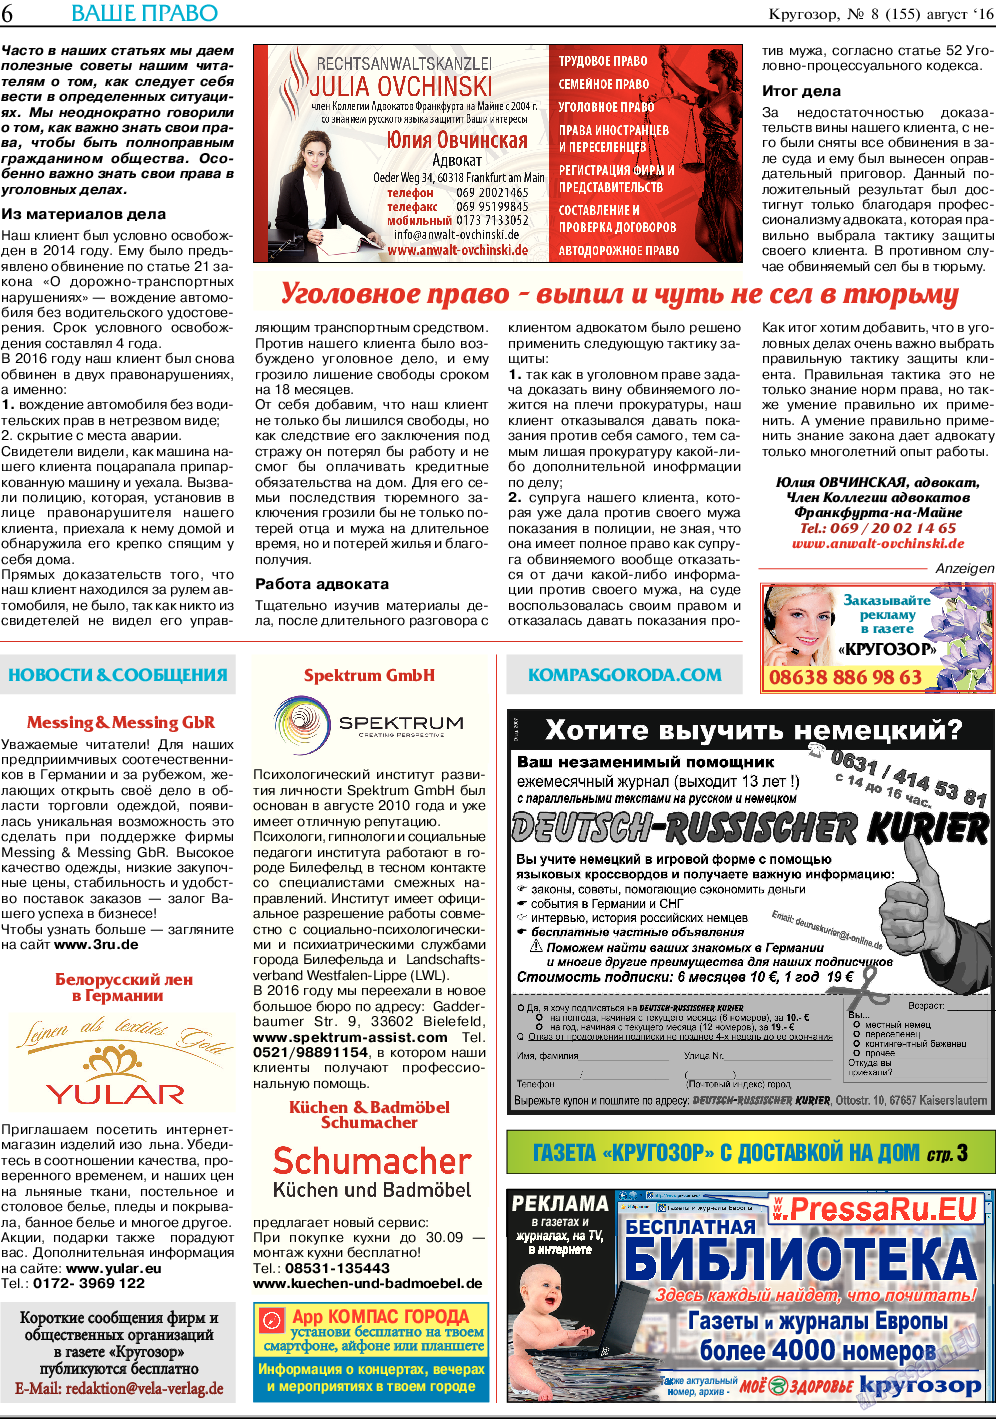 Кругозор, газета. 2016 №8 стр.6